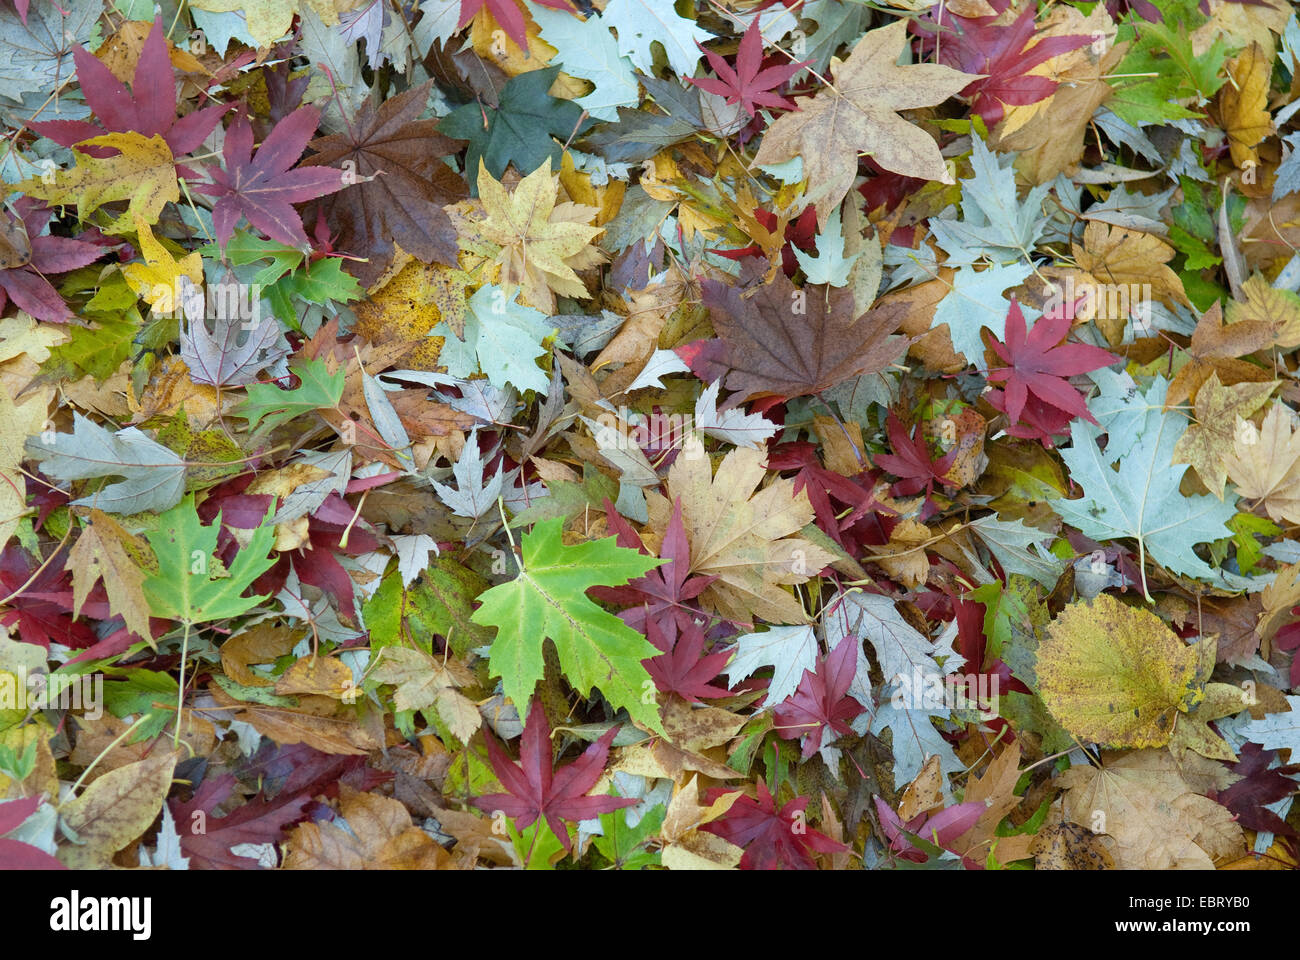 Silver Maple, arce blanco bird's eye, el arce (Acer saccharinum), hojas de arce de especies difefrent en otoño Foto de stock